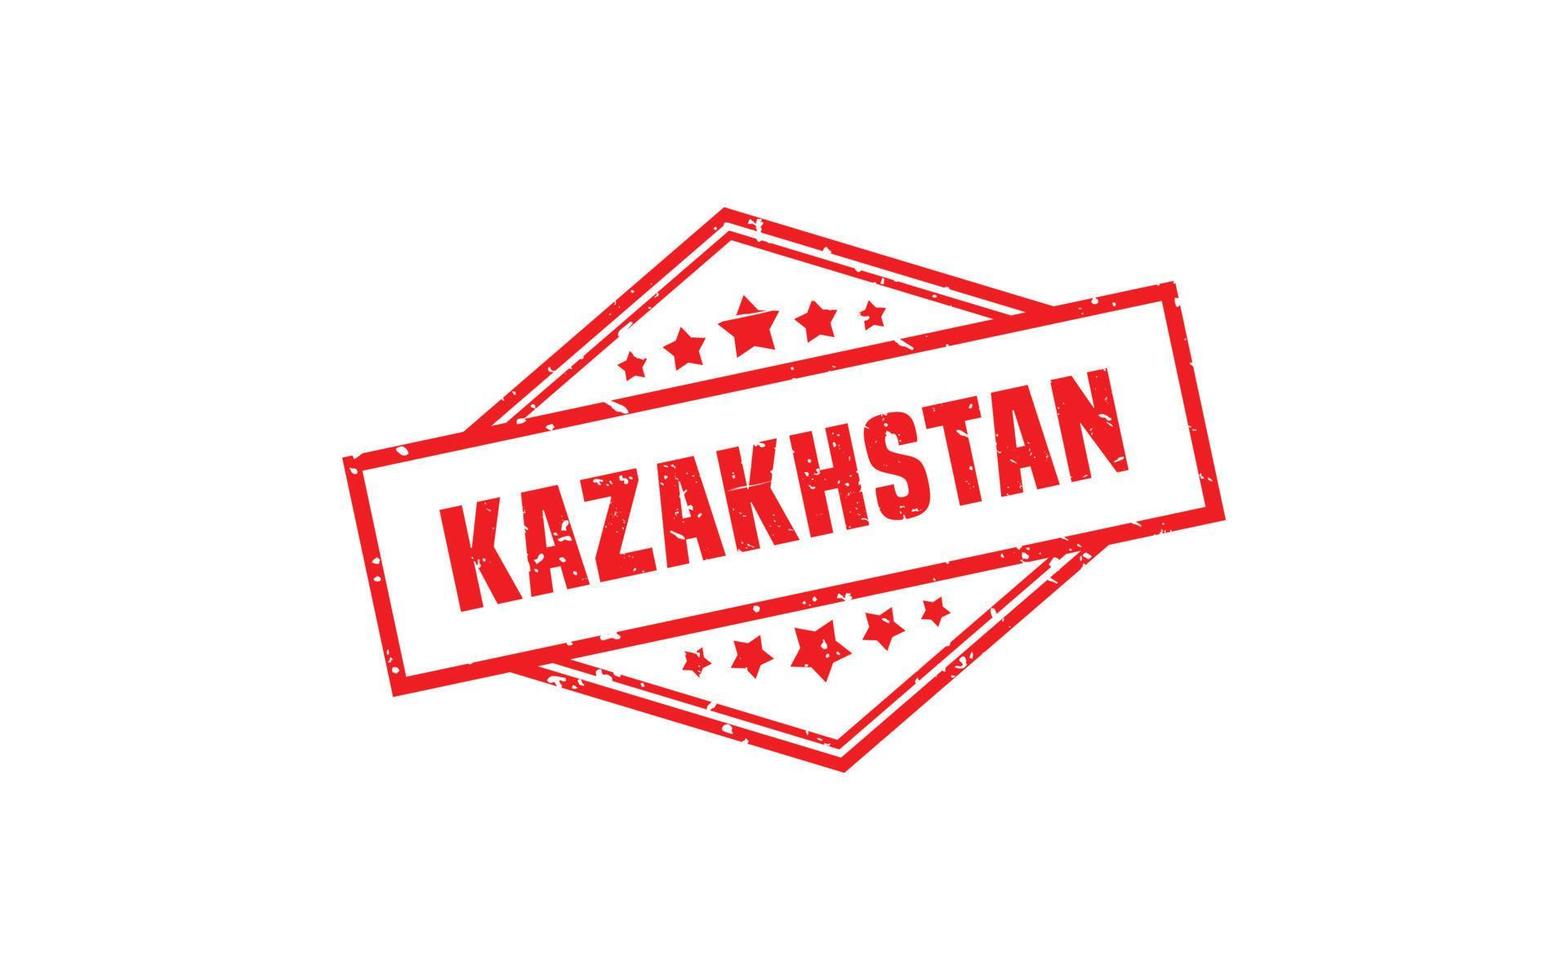 Cazaquistão carimbo de borracha com estilo grunge em fundo branco vetor